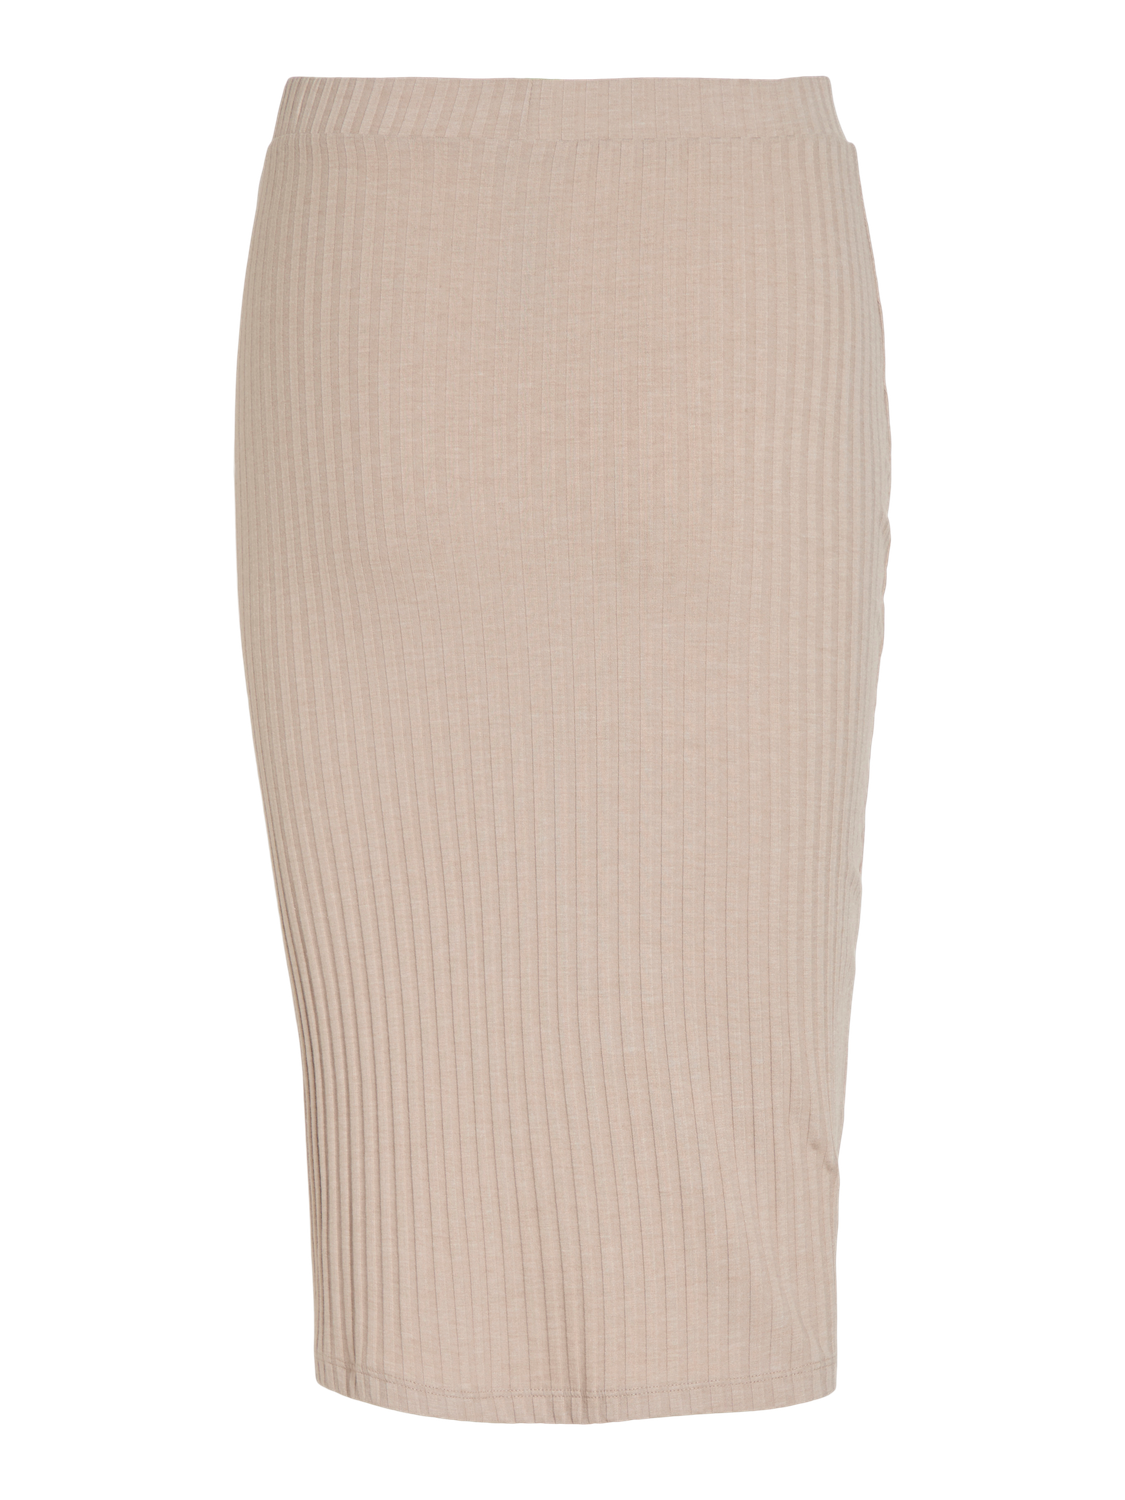 VIRIBINI Skirt - Natural Melange